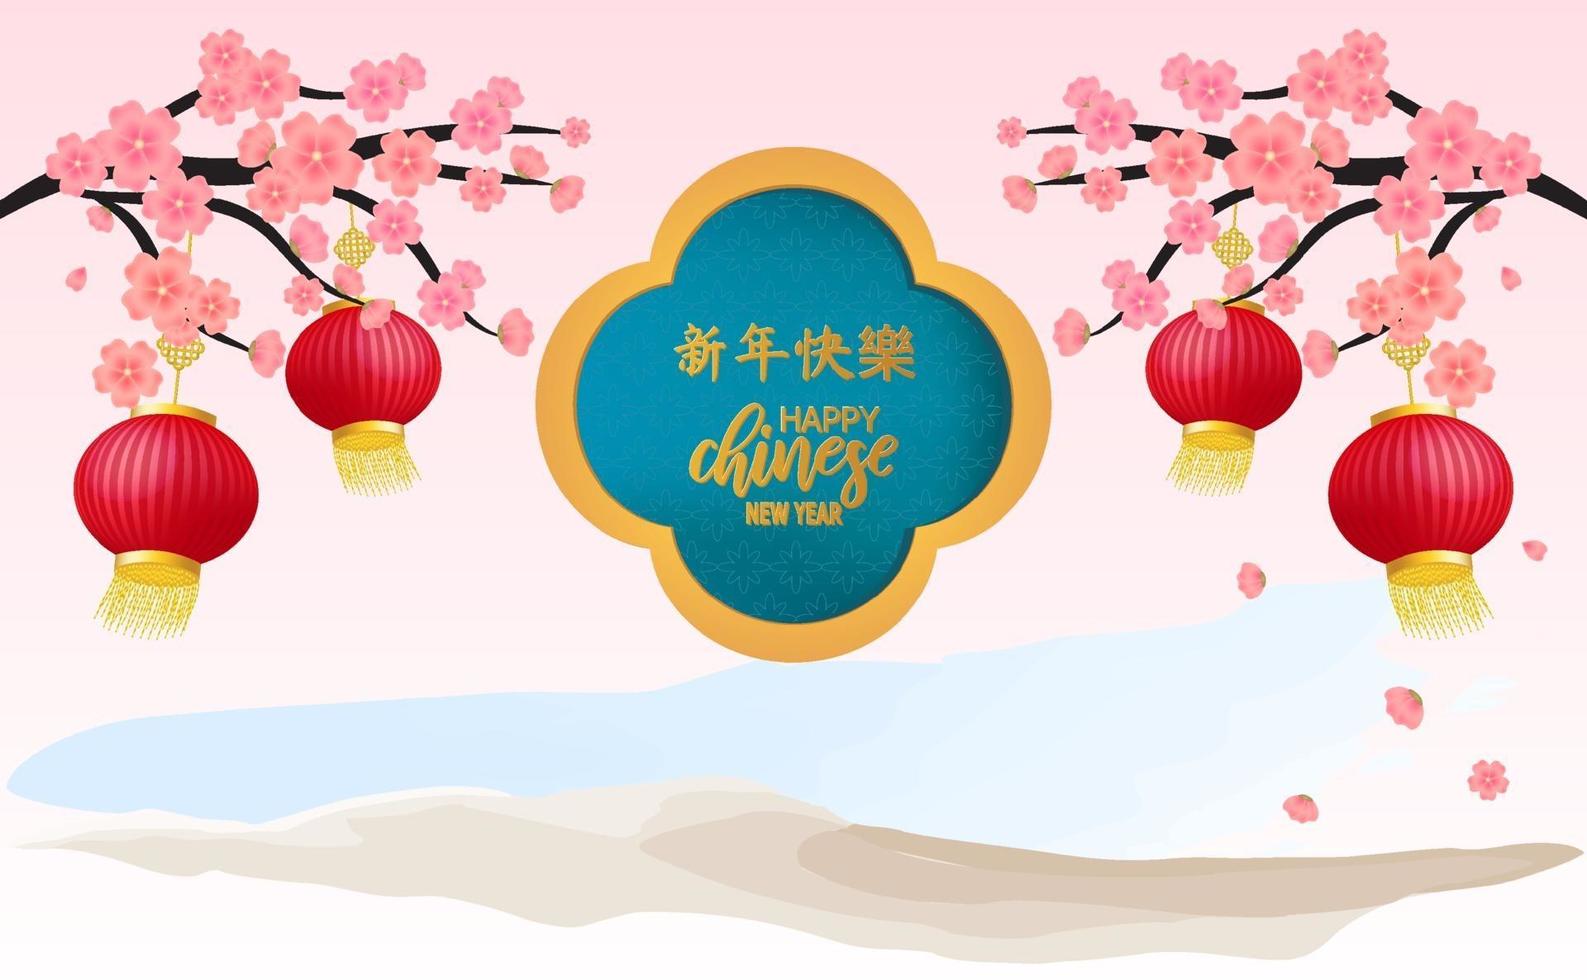 gott kinesiskt nytt år med blomma och lampa. kinesisk översättning är gott kinesiskt nytt år. vektor